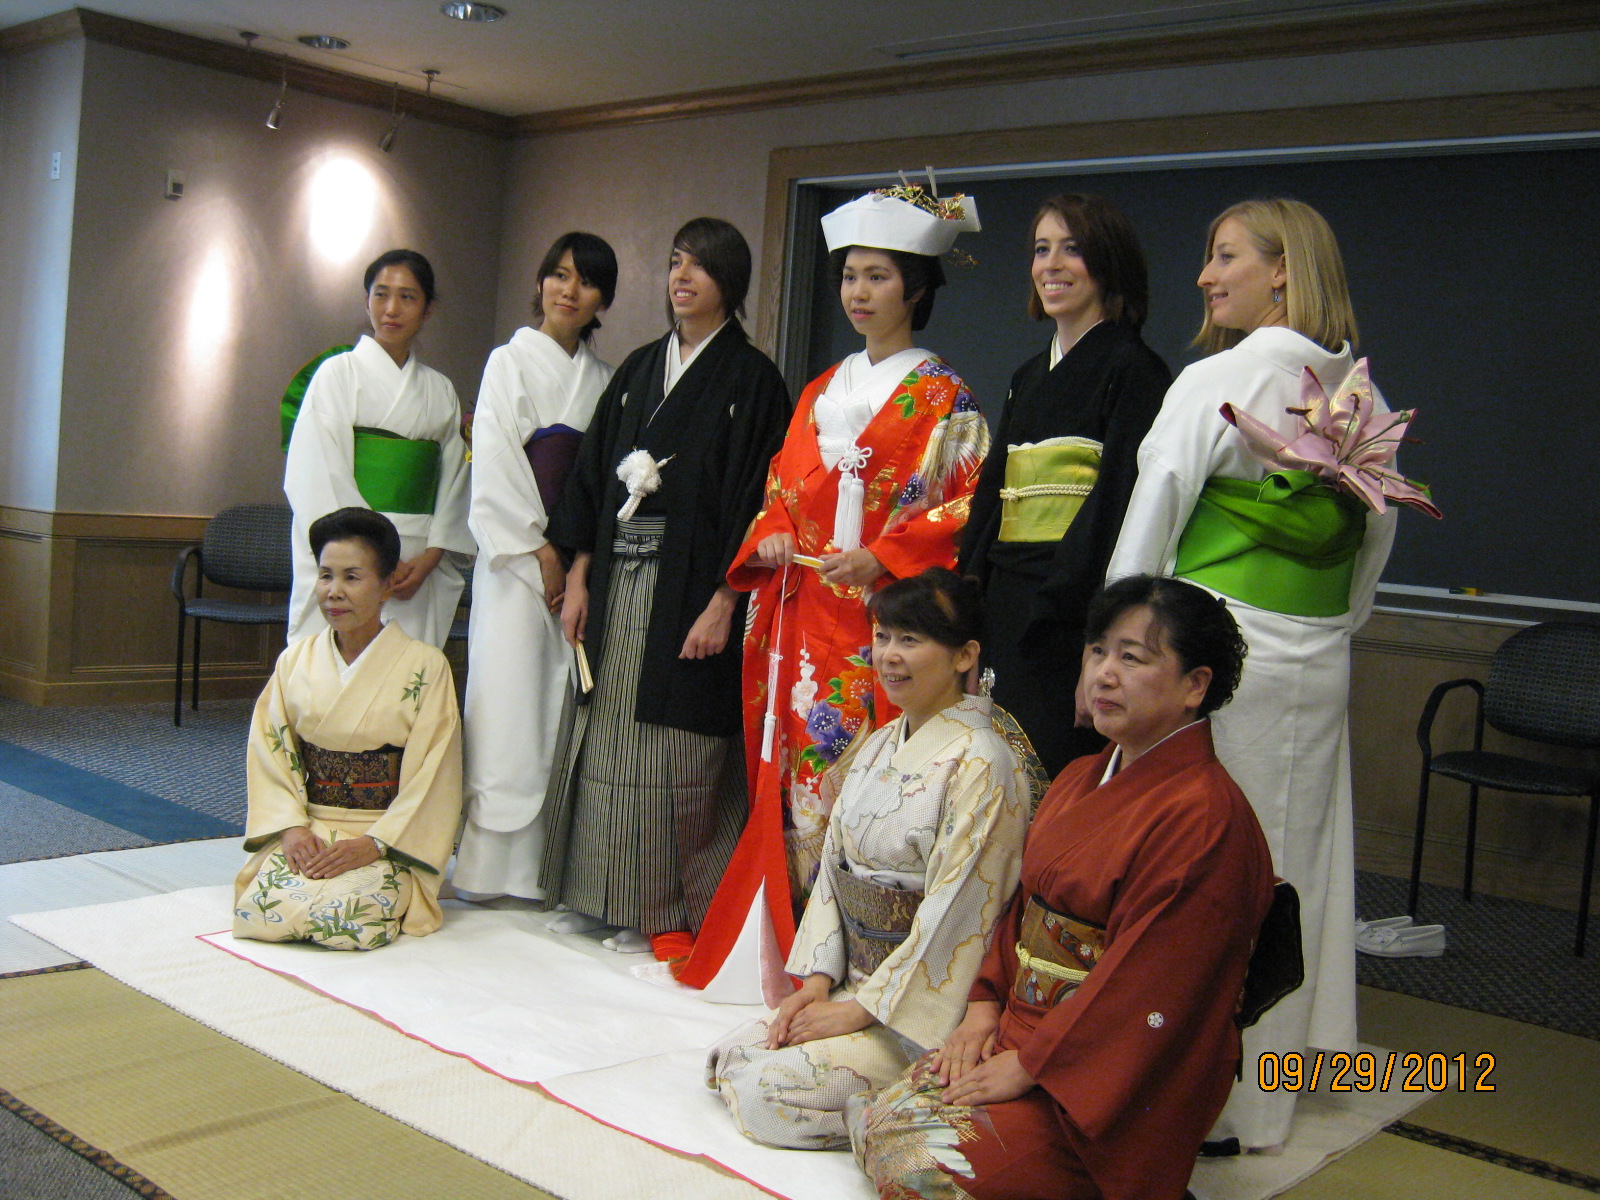 Wedding Party Group Photo in Kimono